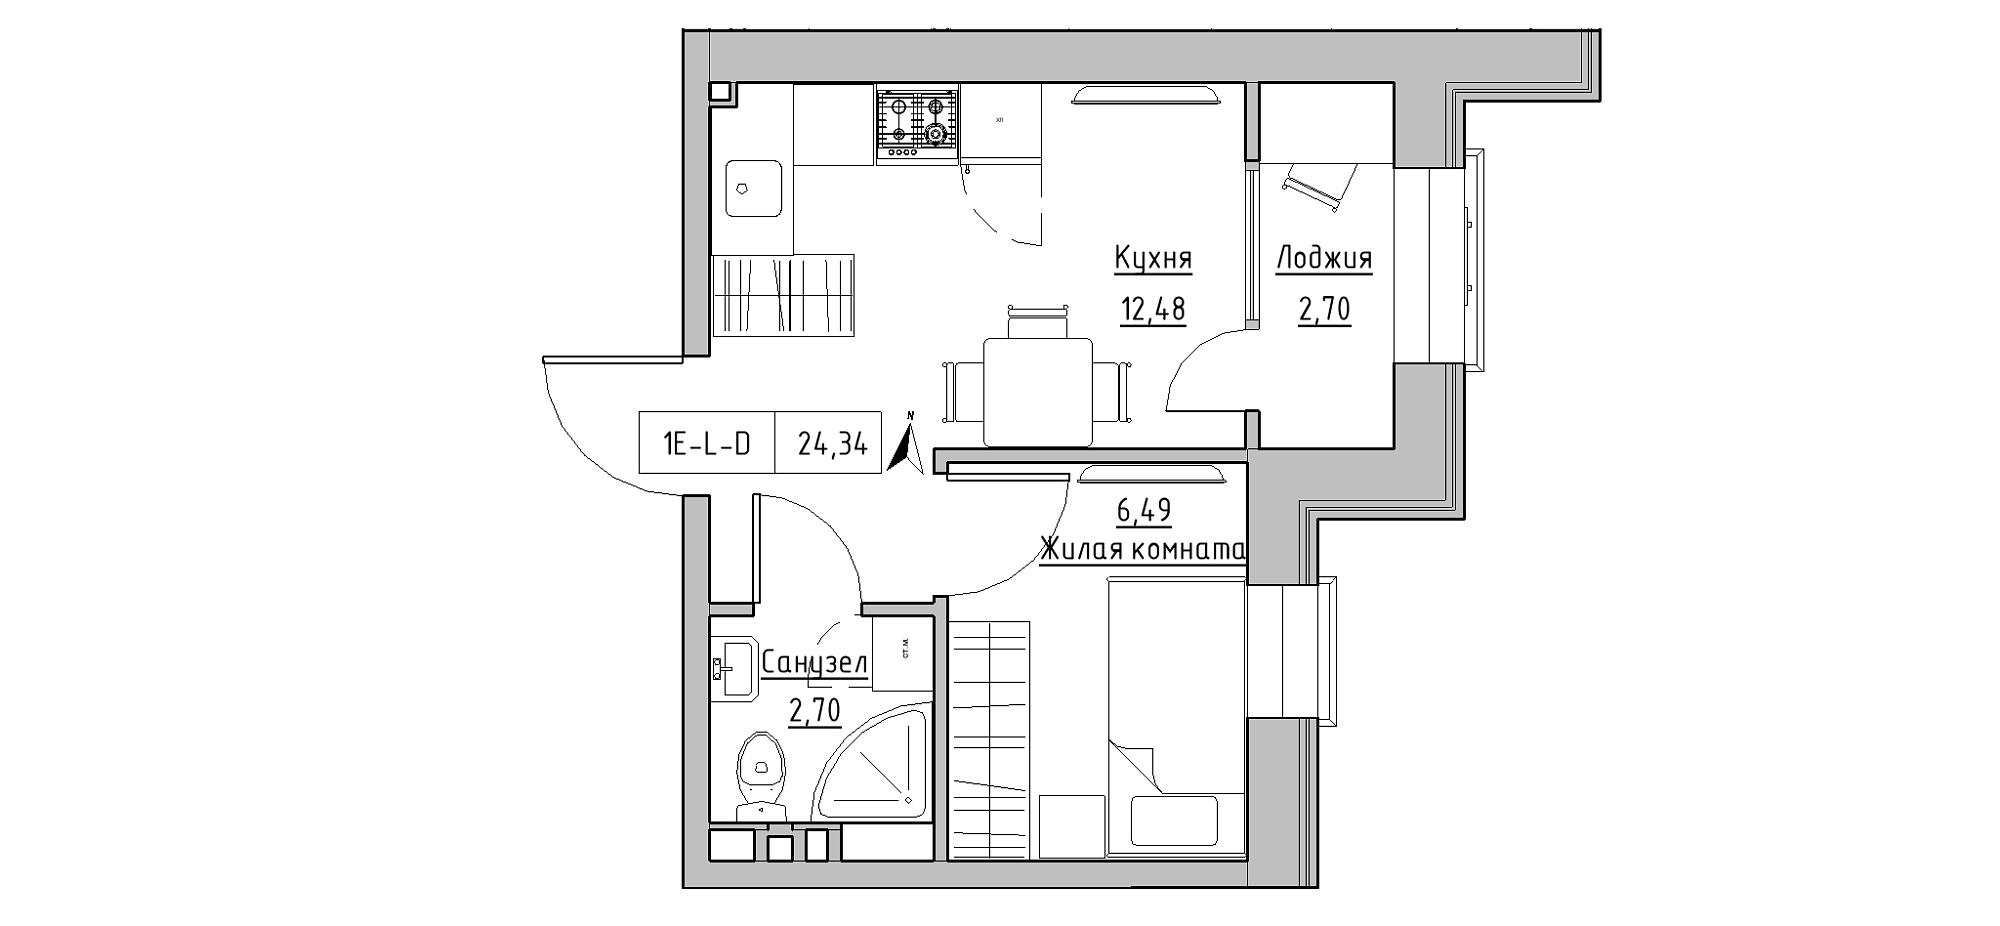 Планування 1-к квартира площею 24.34м2, KS-020-03/0015.